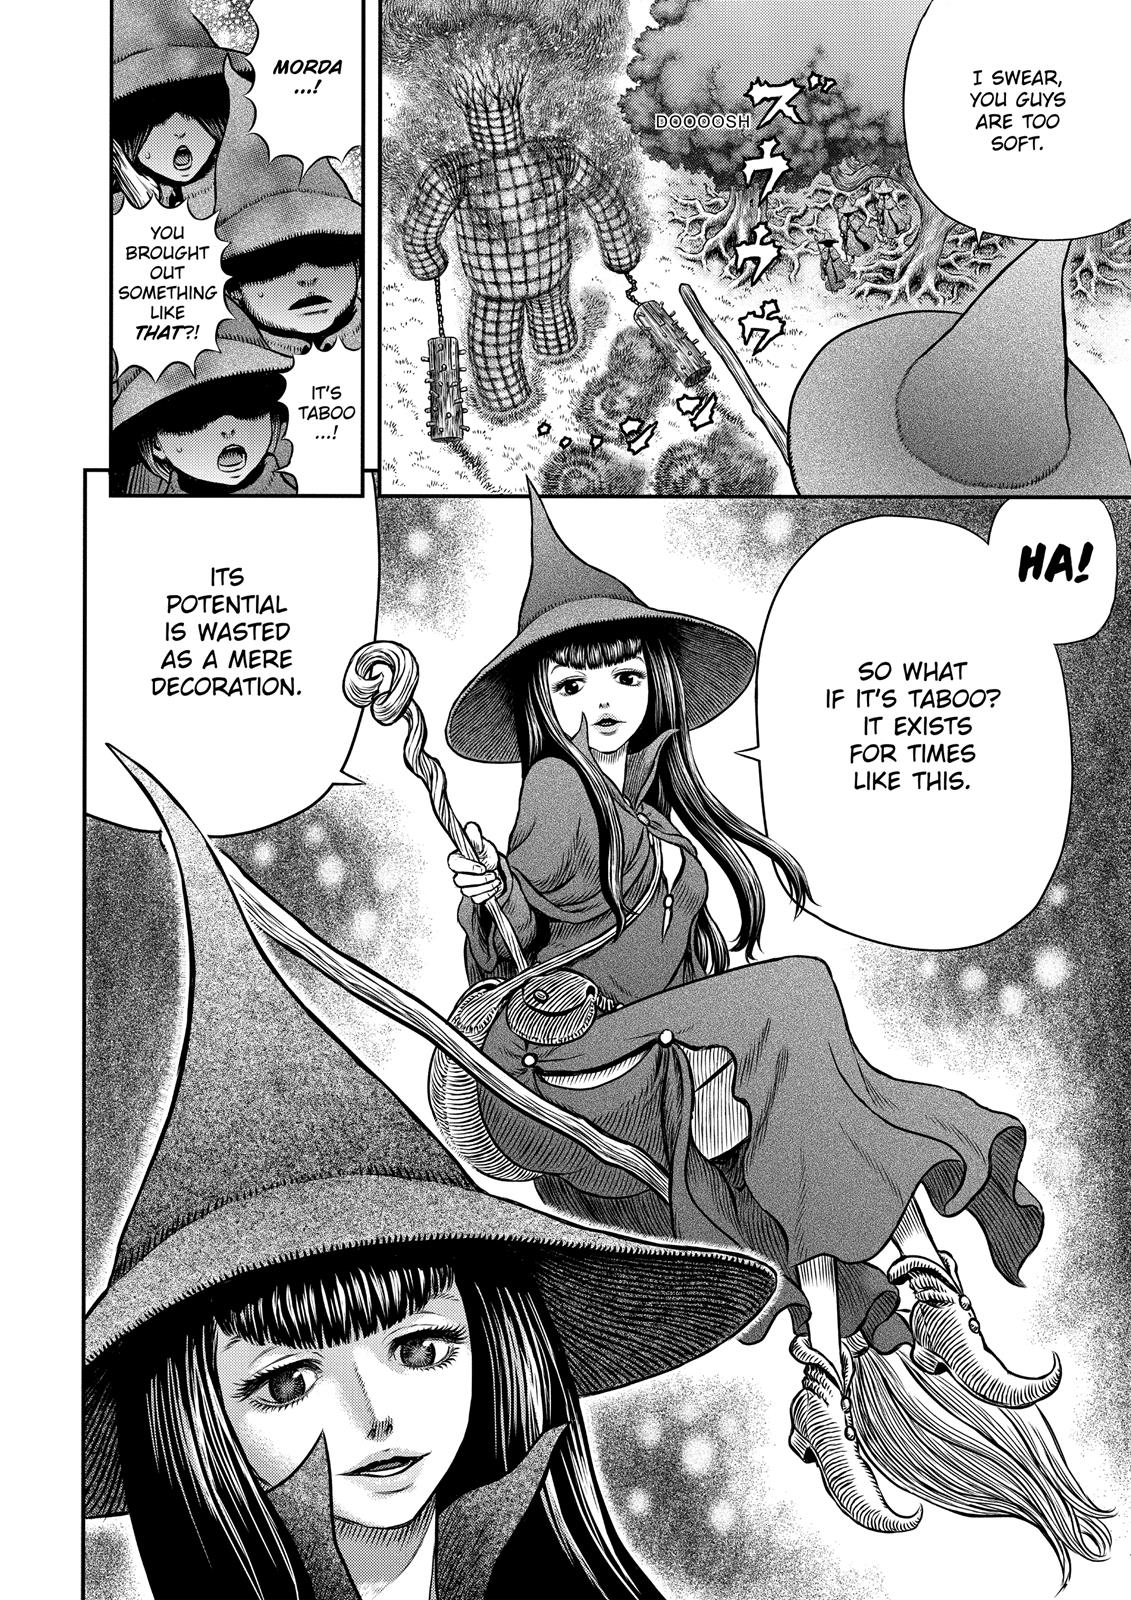 Berserk Manga Chapter 343 image 24